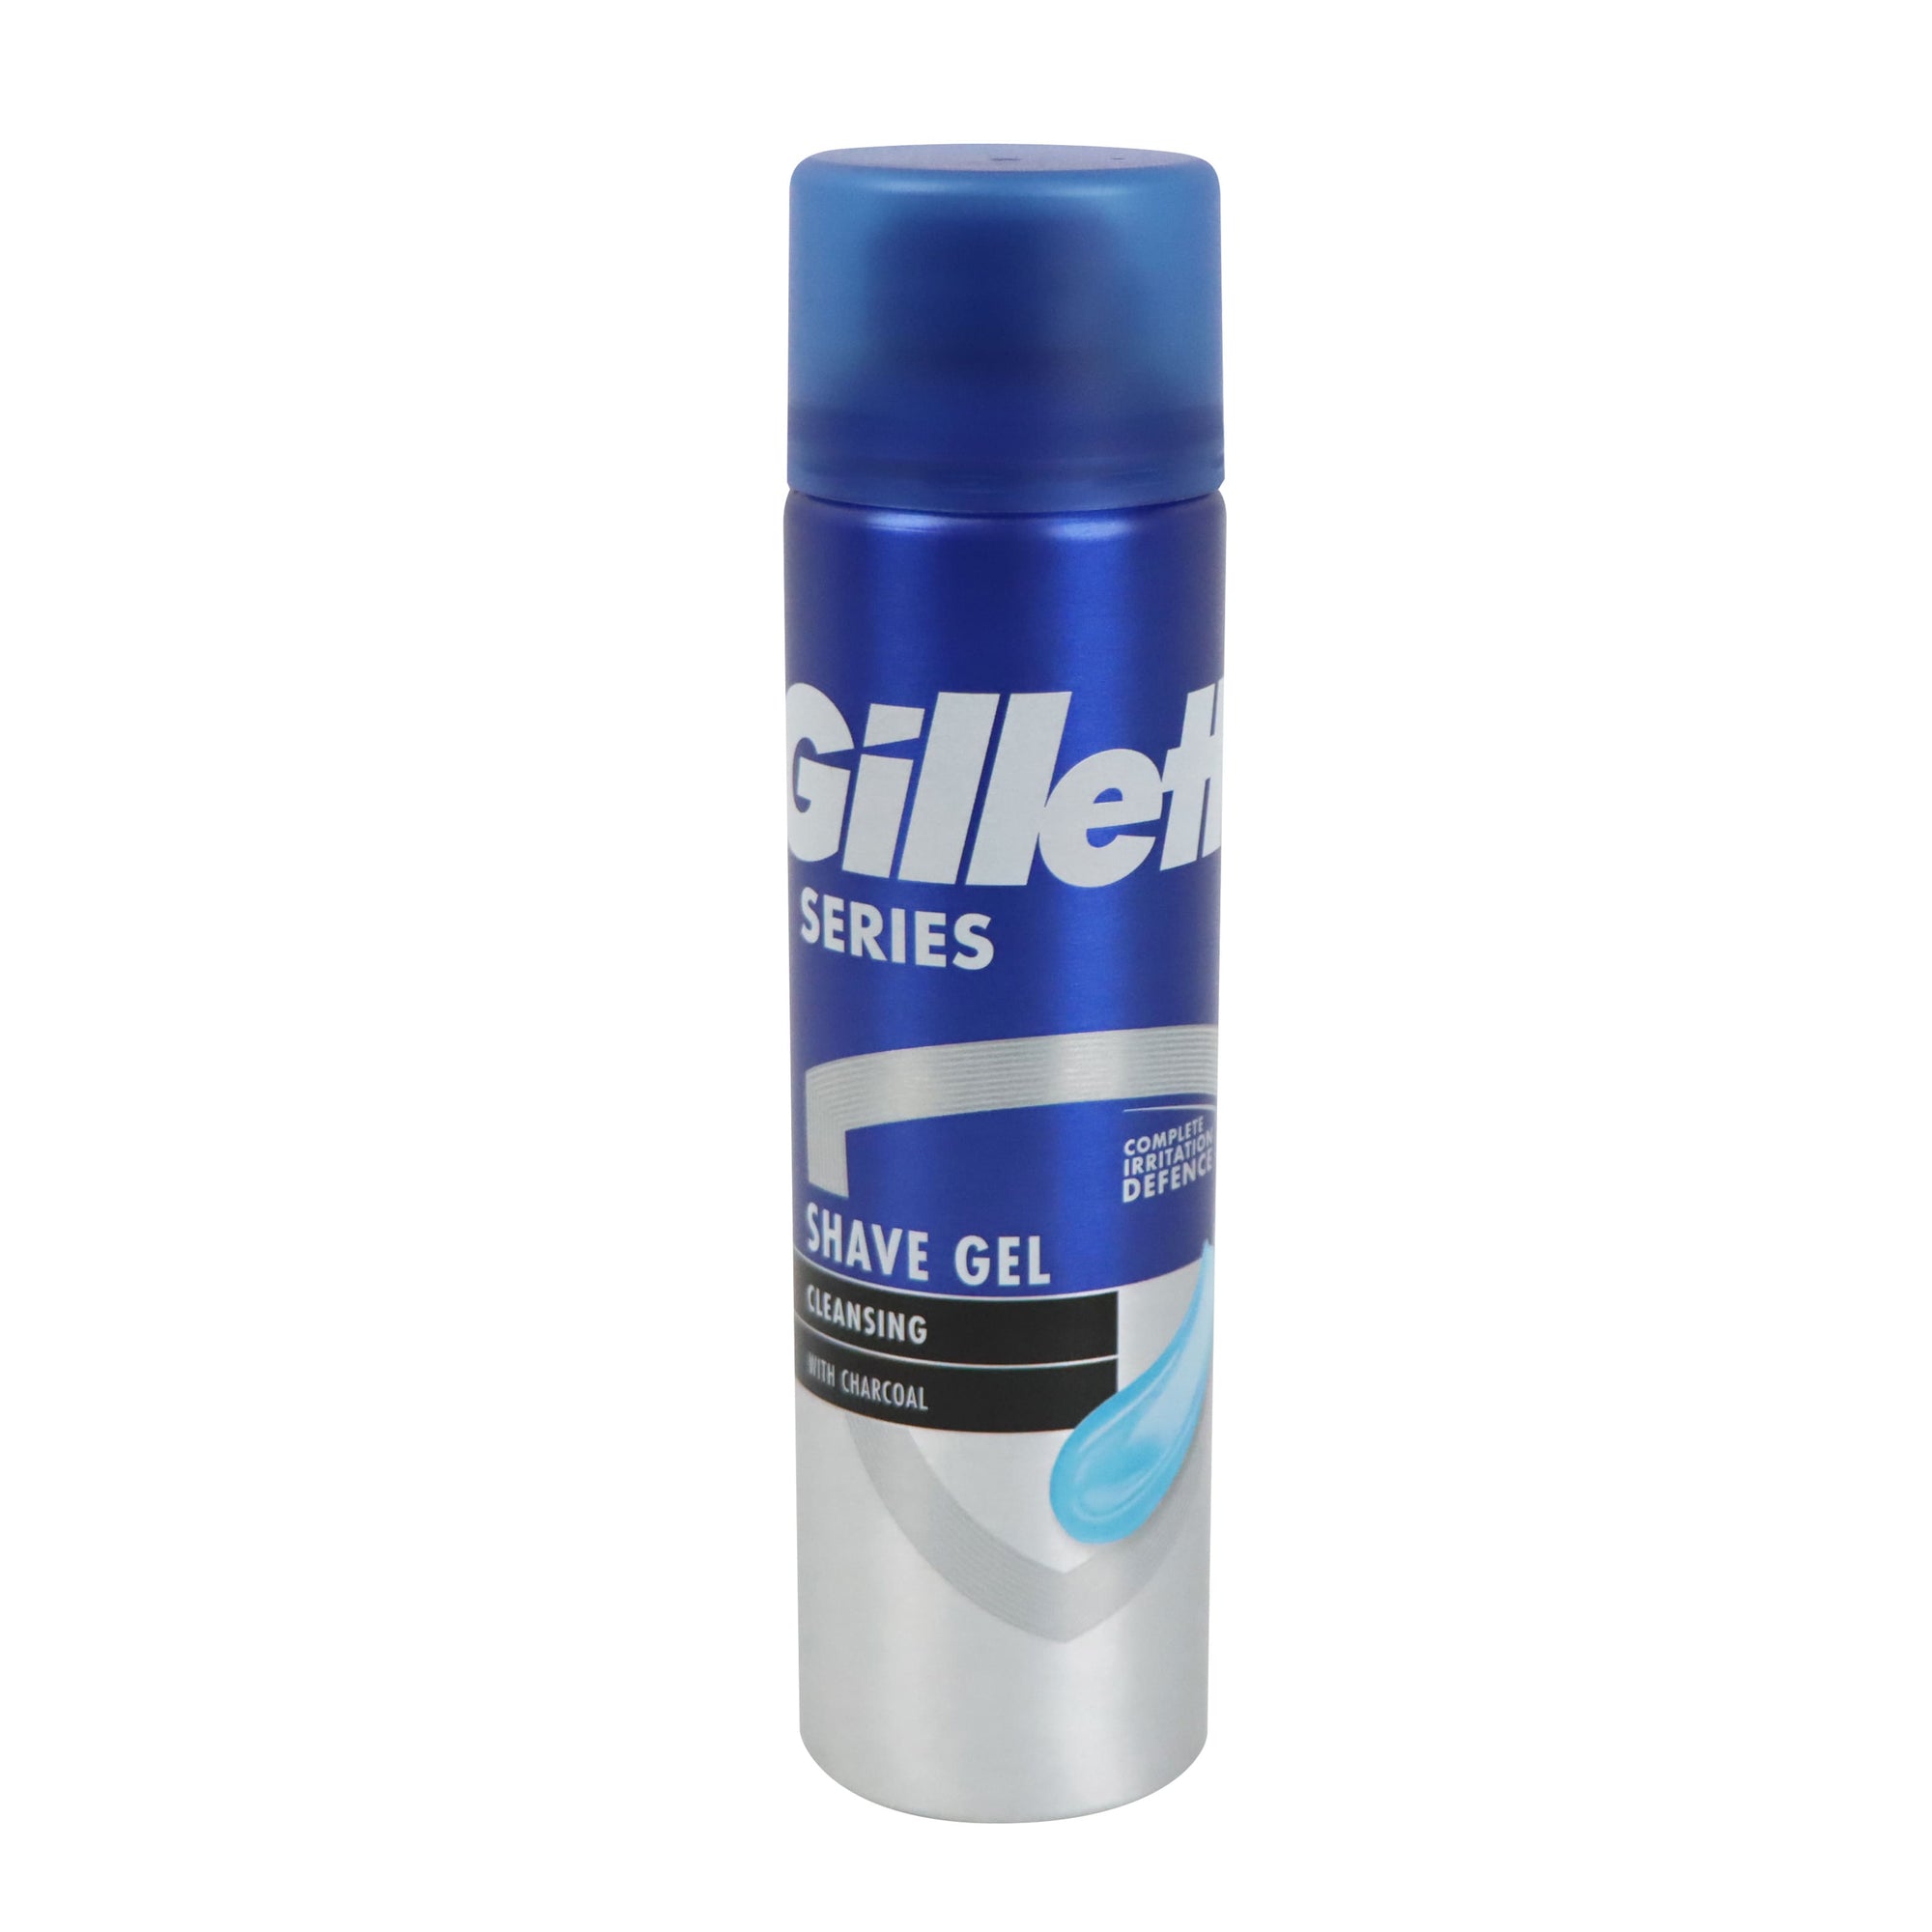 Gillette Charcoal Skin Shave Gel 200ml